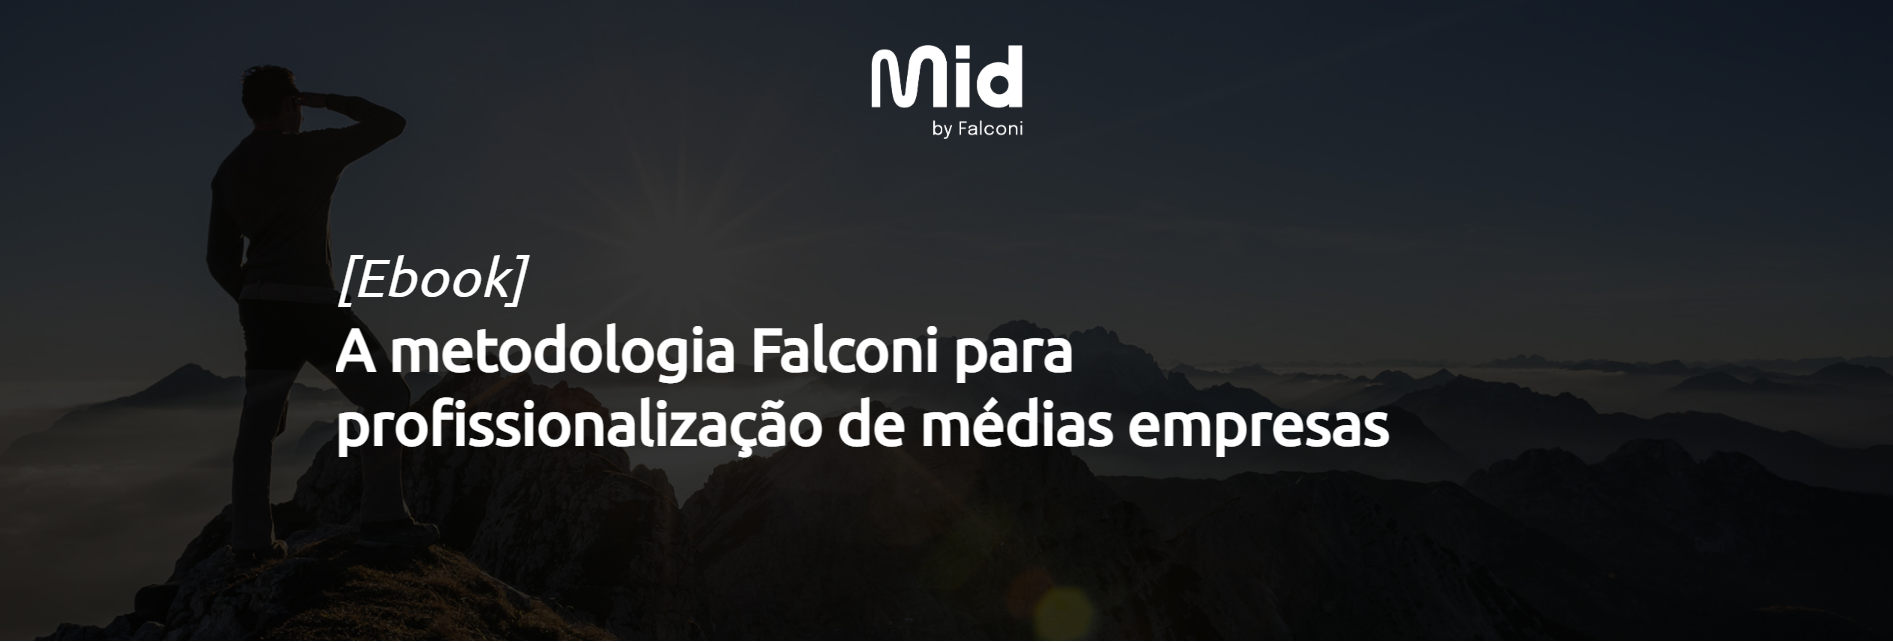 banner-metodologia-falconi